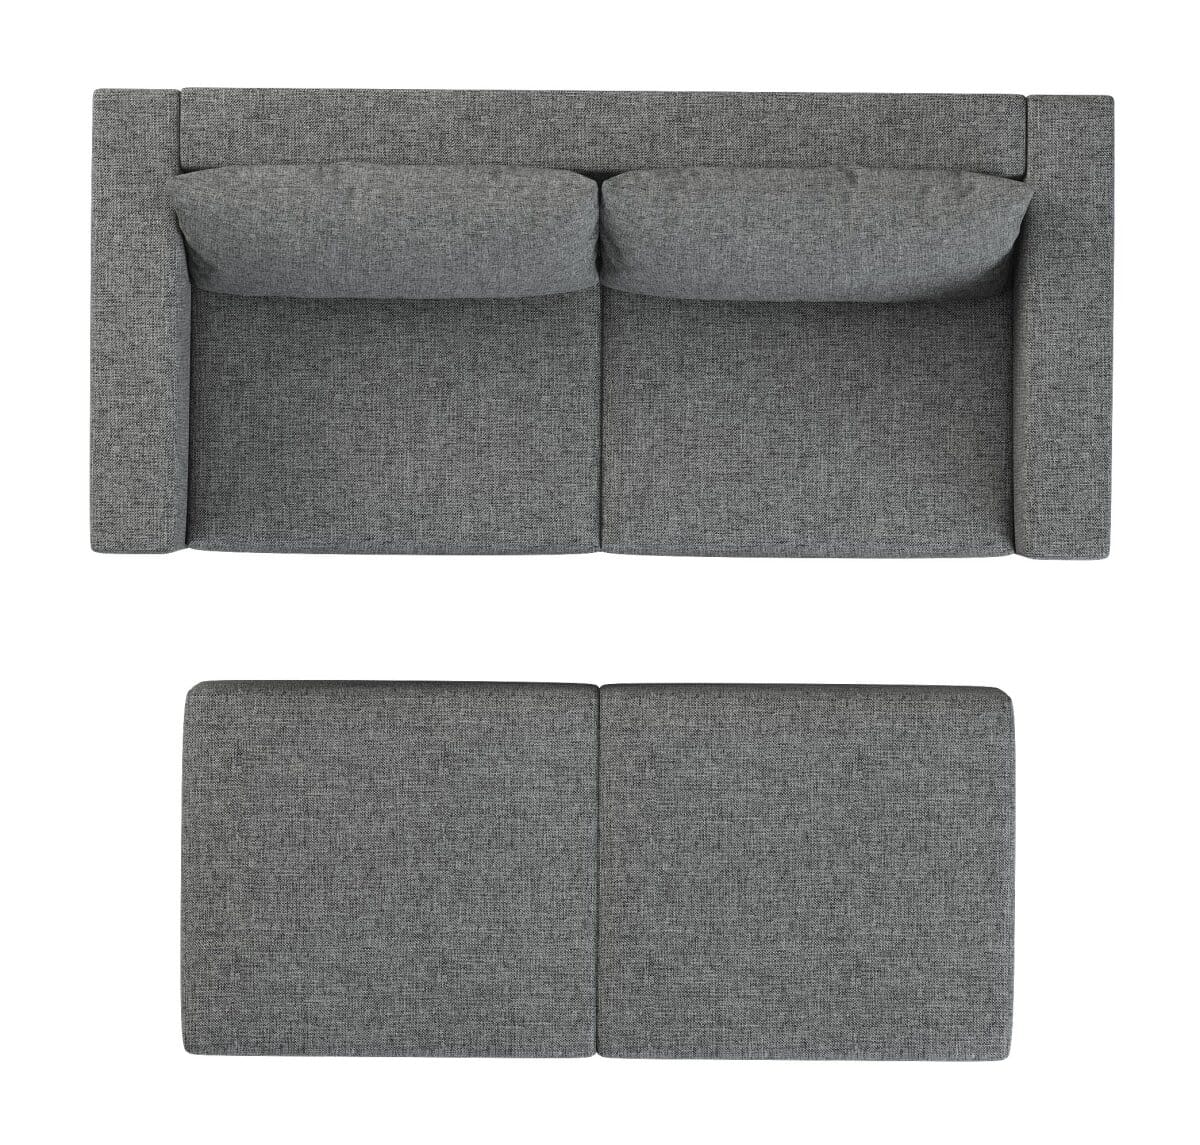 Mini sofa, divanetto apribile Elefant Green